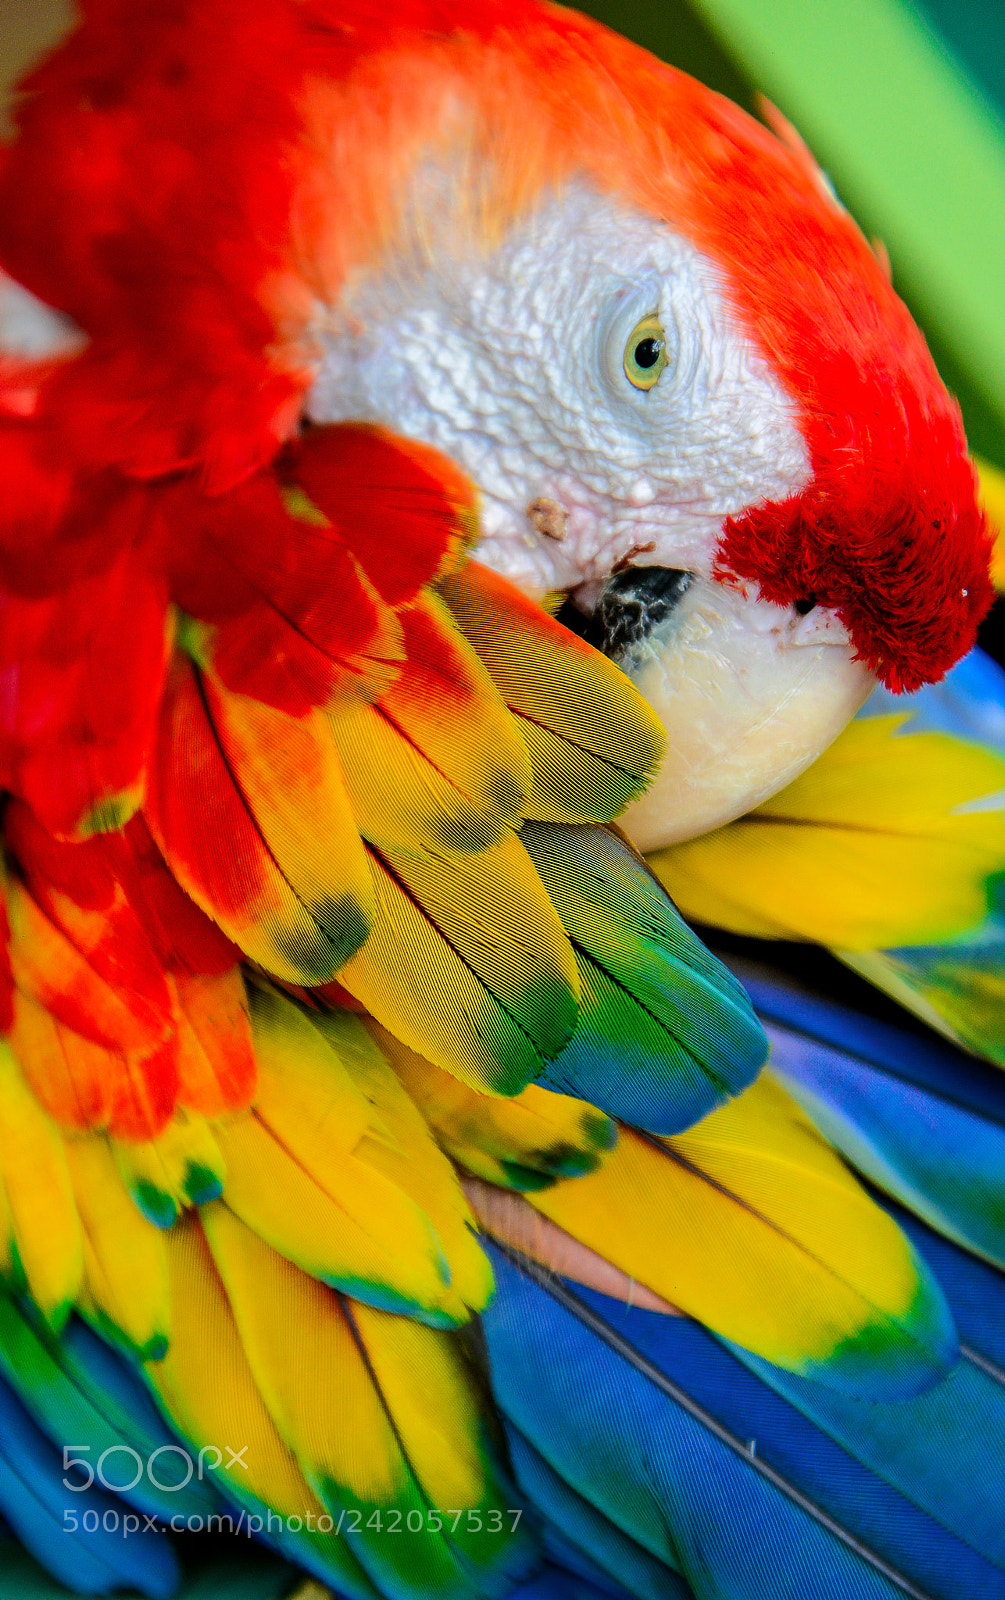 Nikon D800E sample photo. Parrot cartagena kolumbien photography